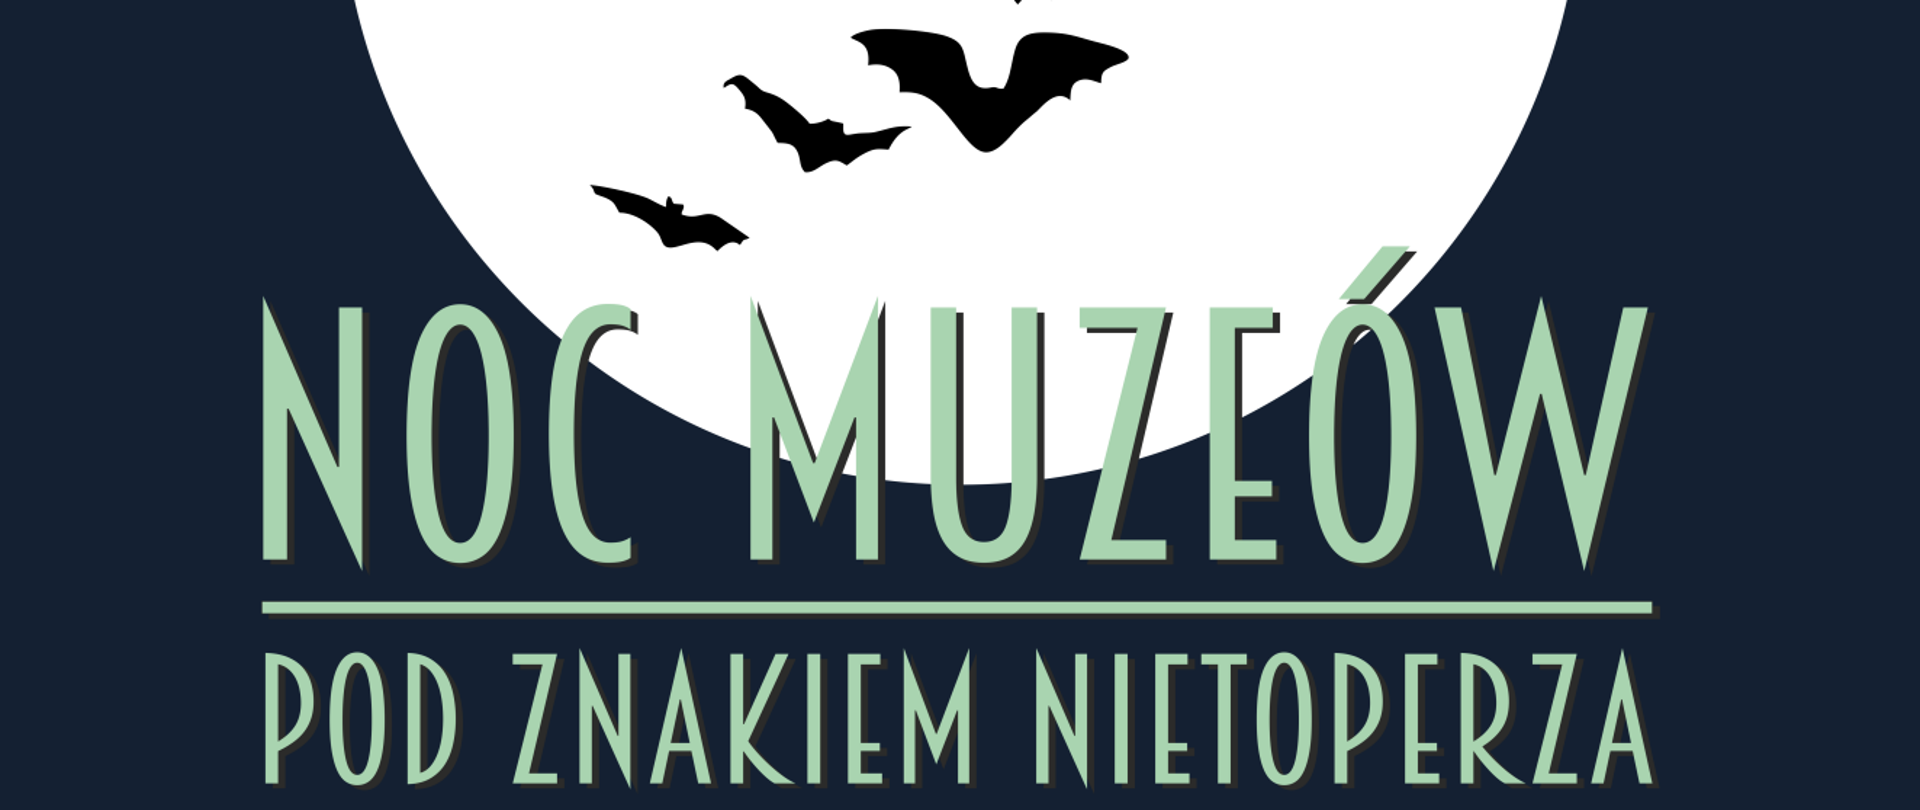 Grafika z napisem Noc Muzeum pod znakiem Nietoperza. W tle księżyc i wizerunki lecących nietoperzy